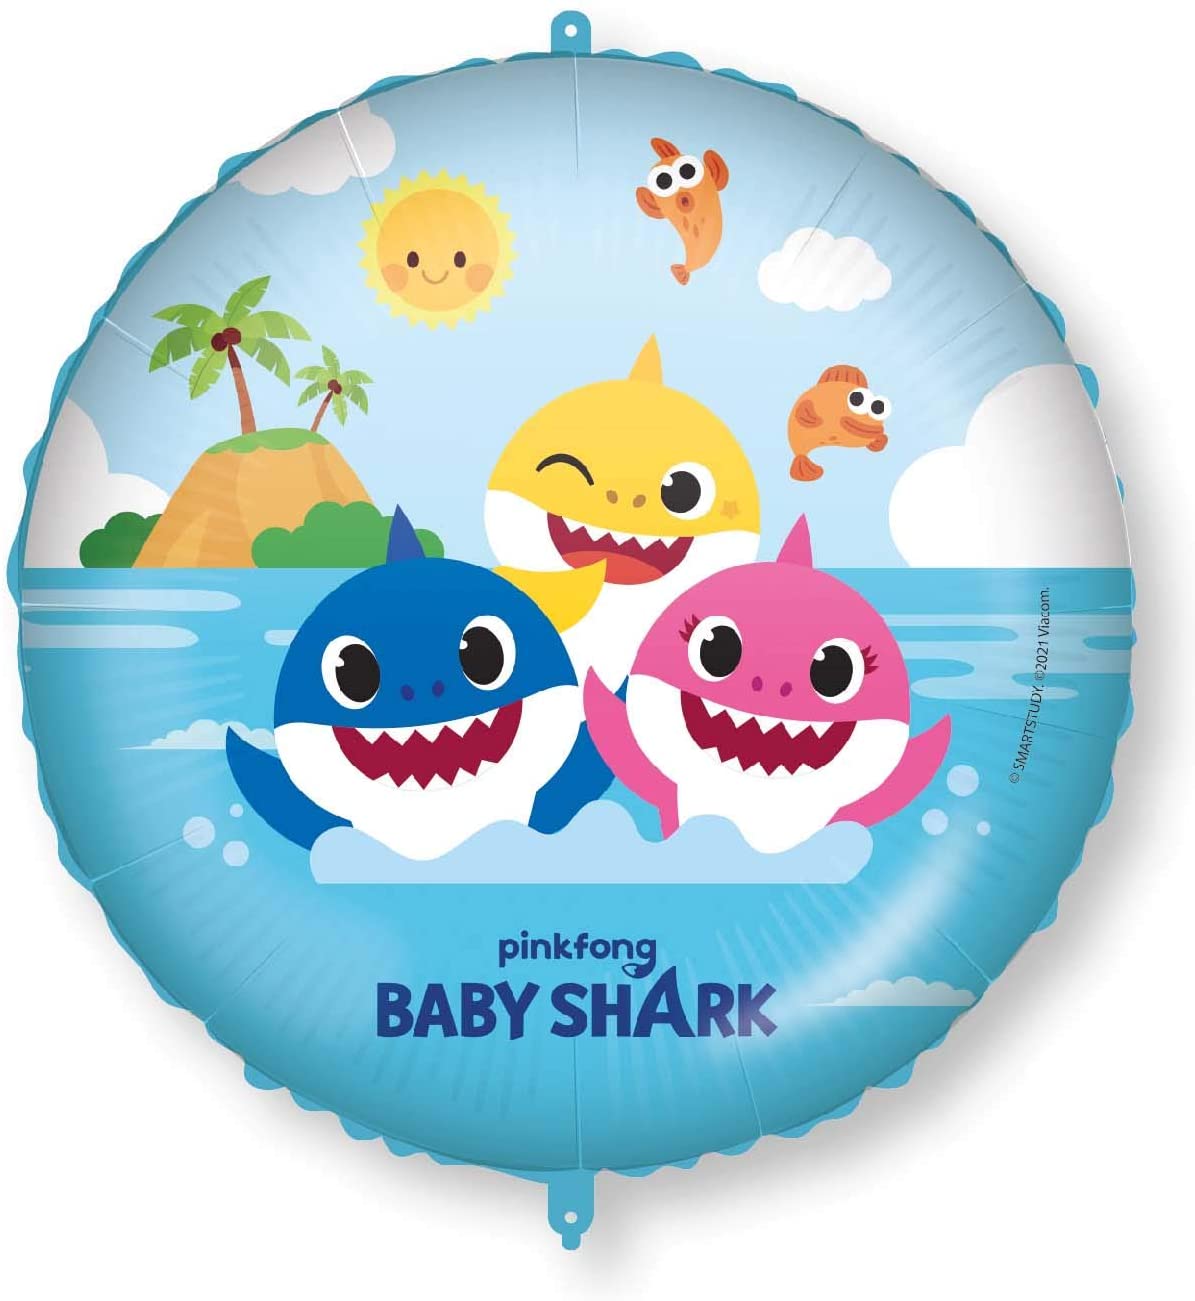 Procos Fóliový balón - Baby Shark kruh 46 cm